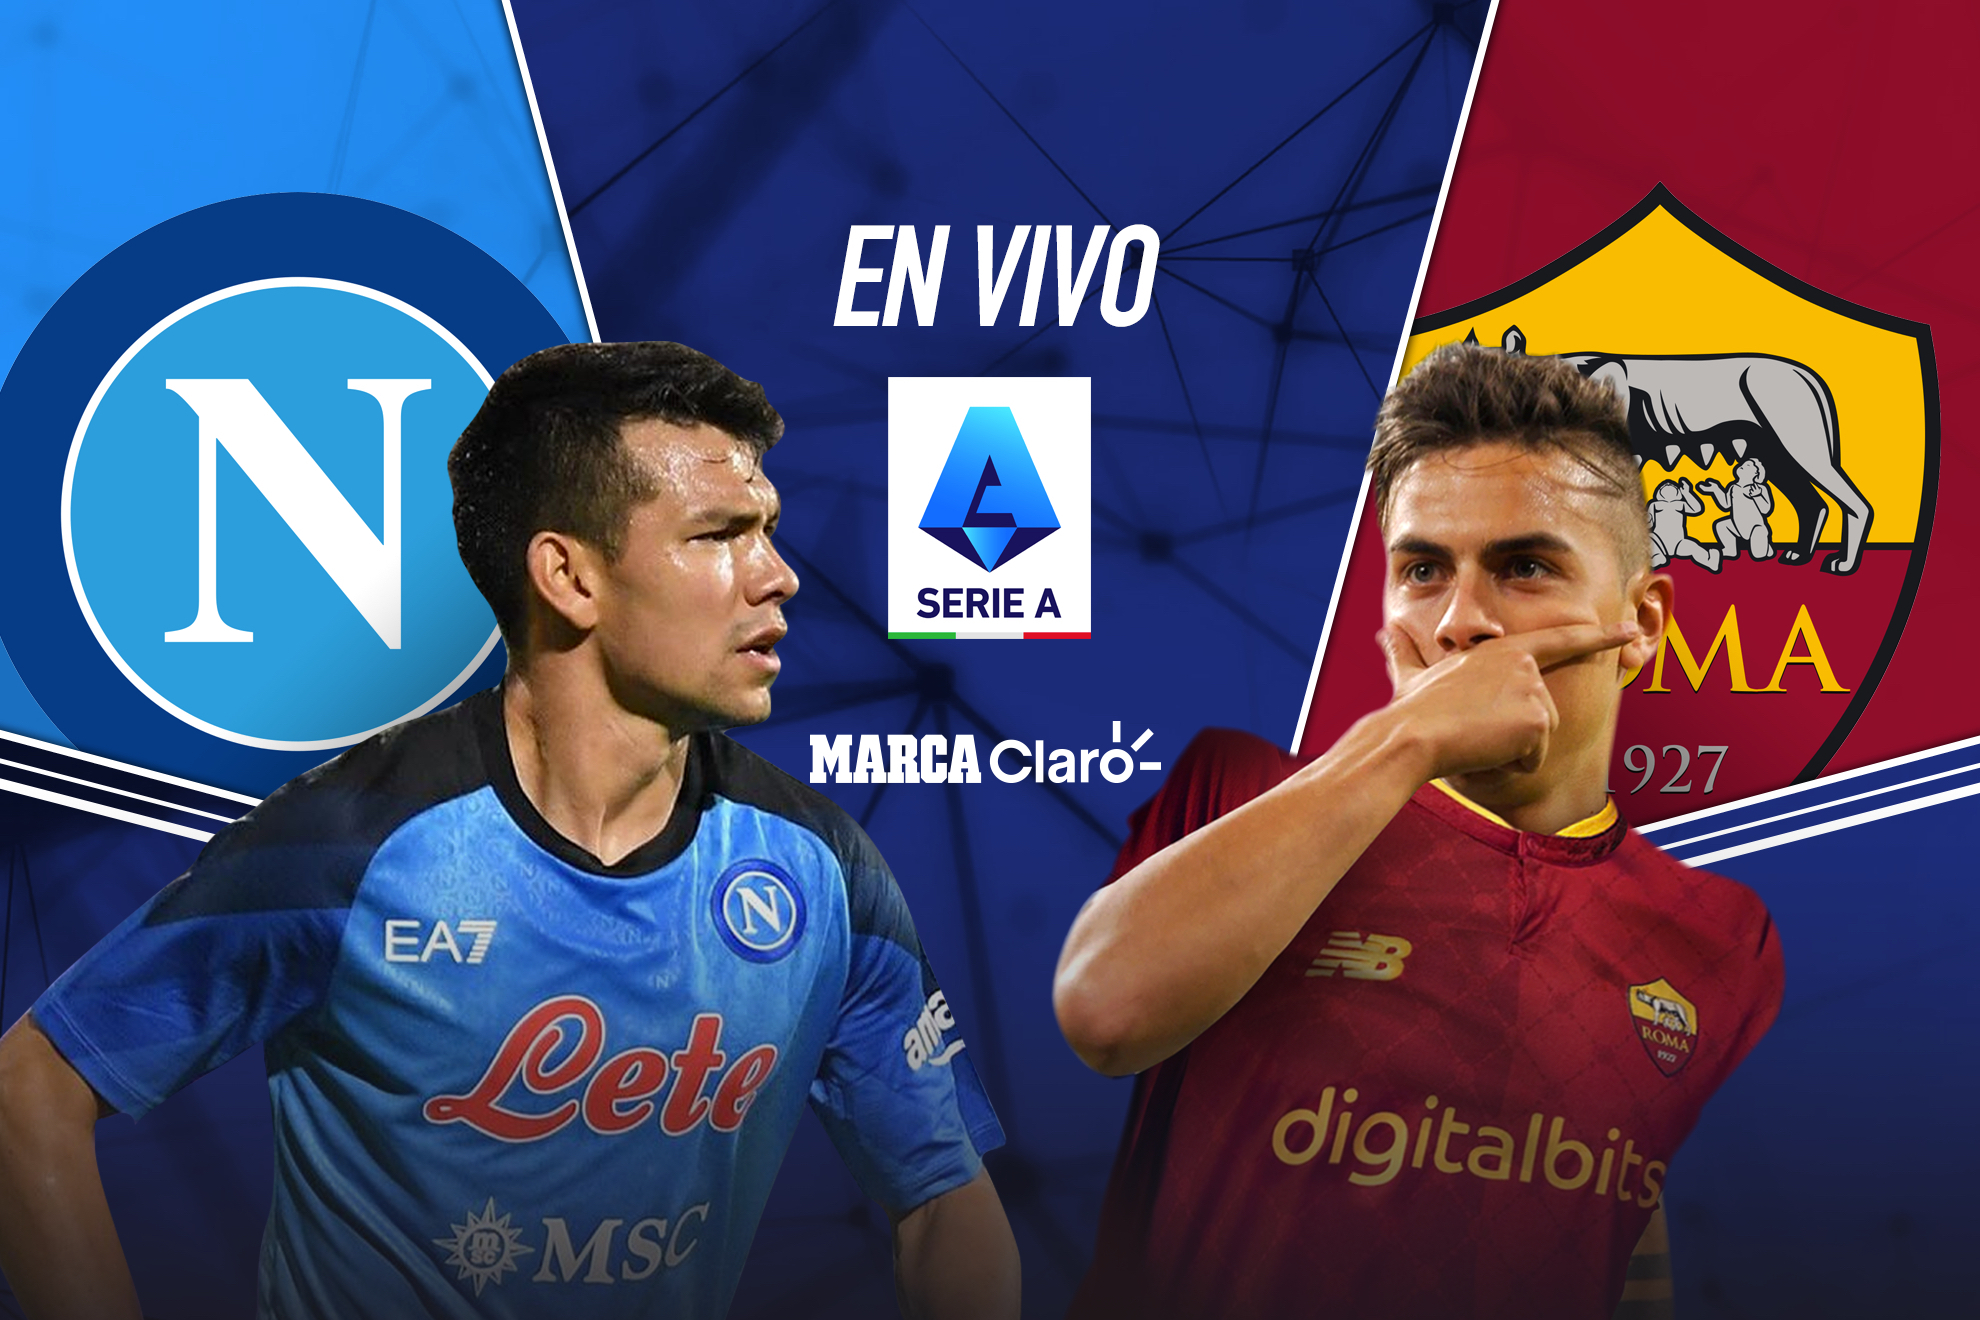 Napoli vs Roma en vivo el partido de Chucky Lozano en la Serie A. | MARCA Claro